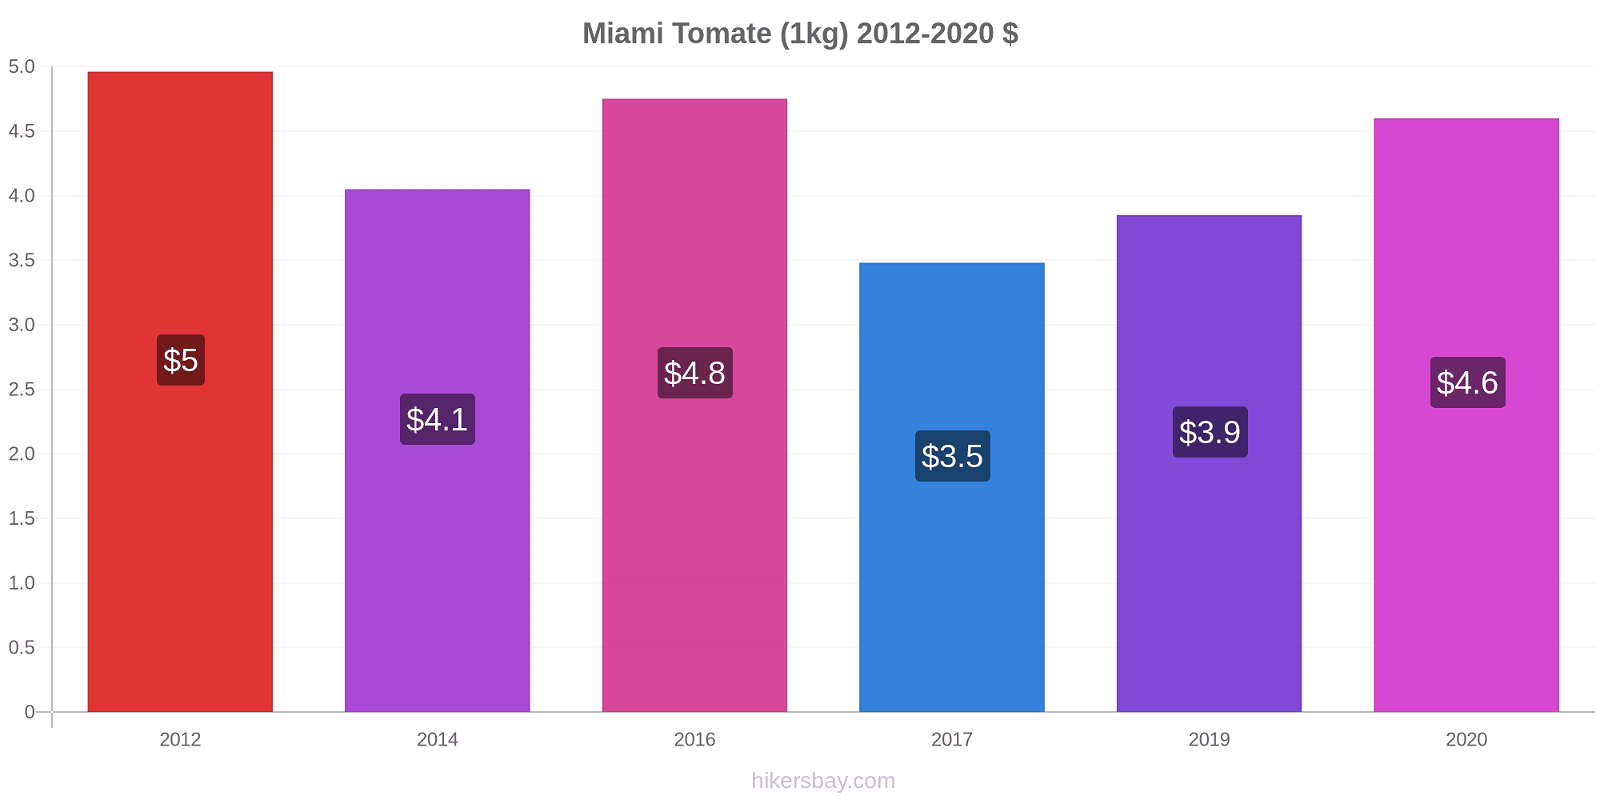 Miami cambios de precios Tomate (1kg) hikersbay.com